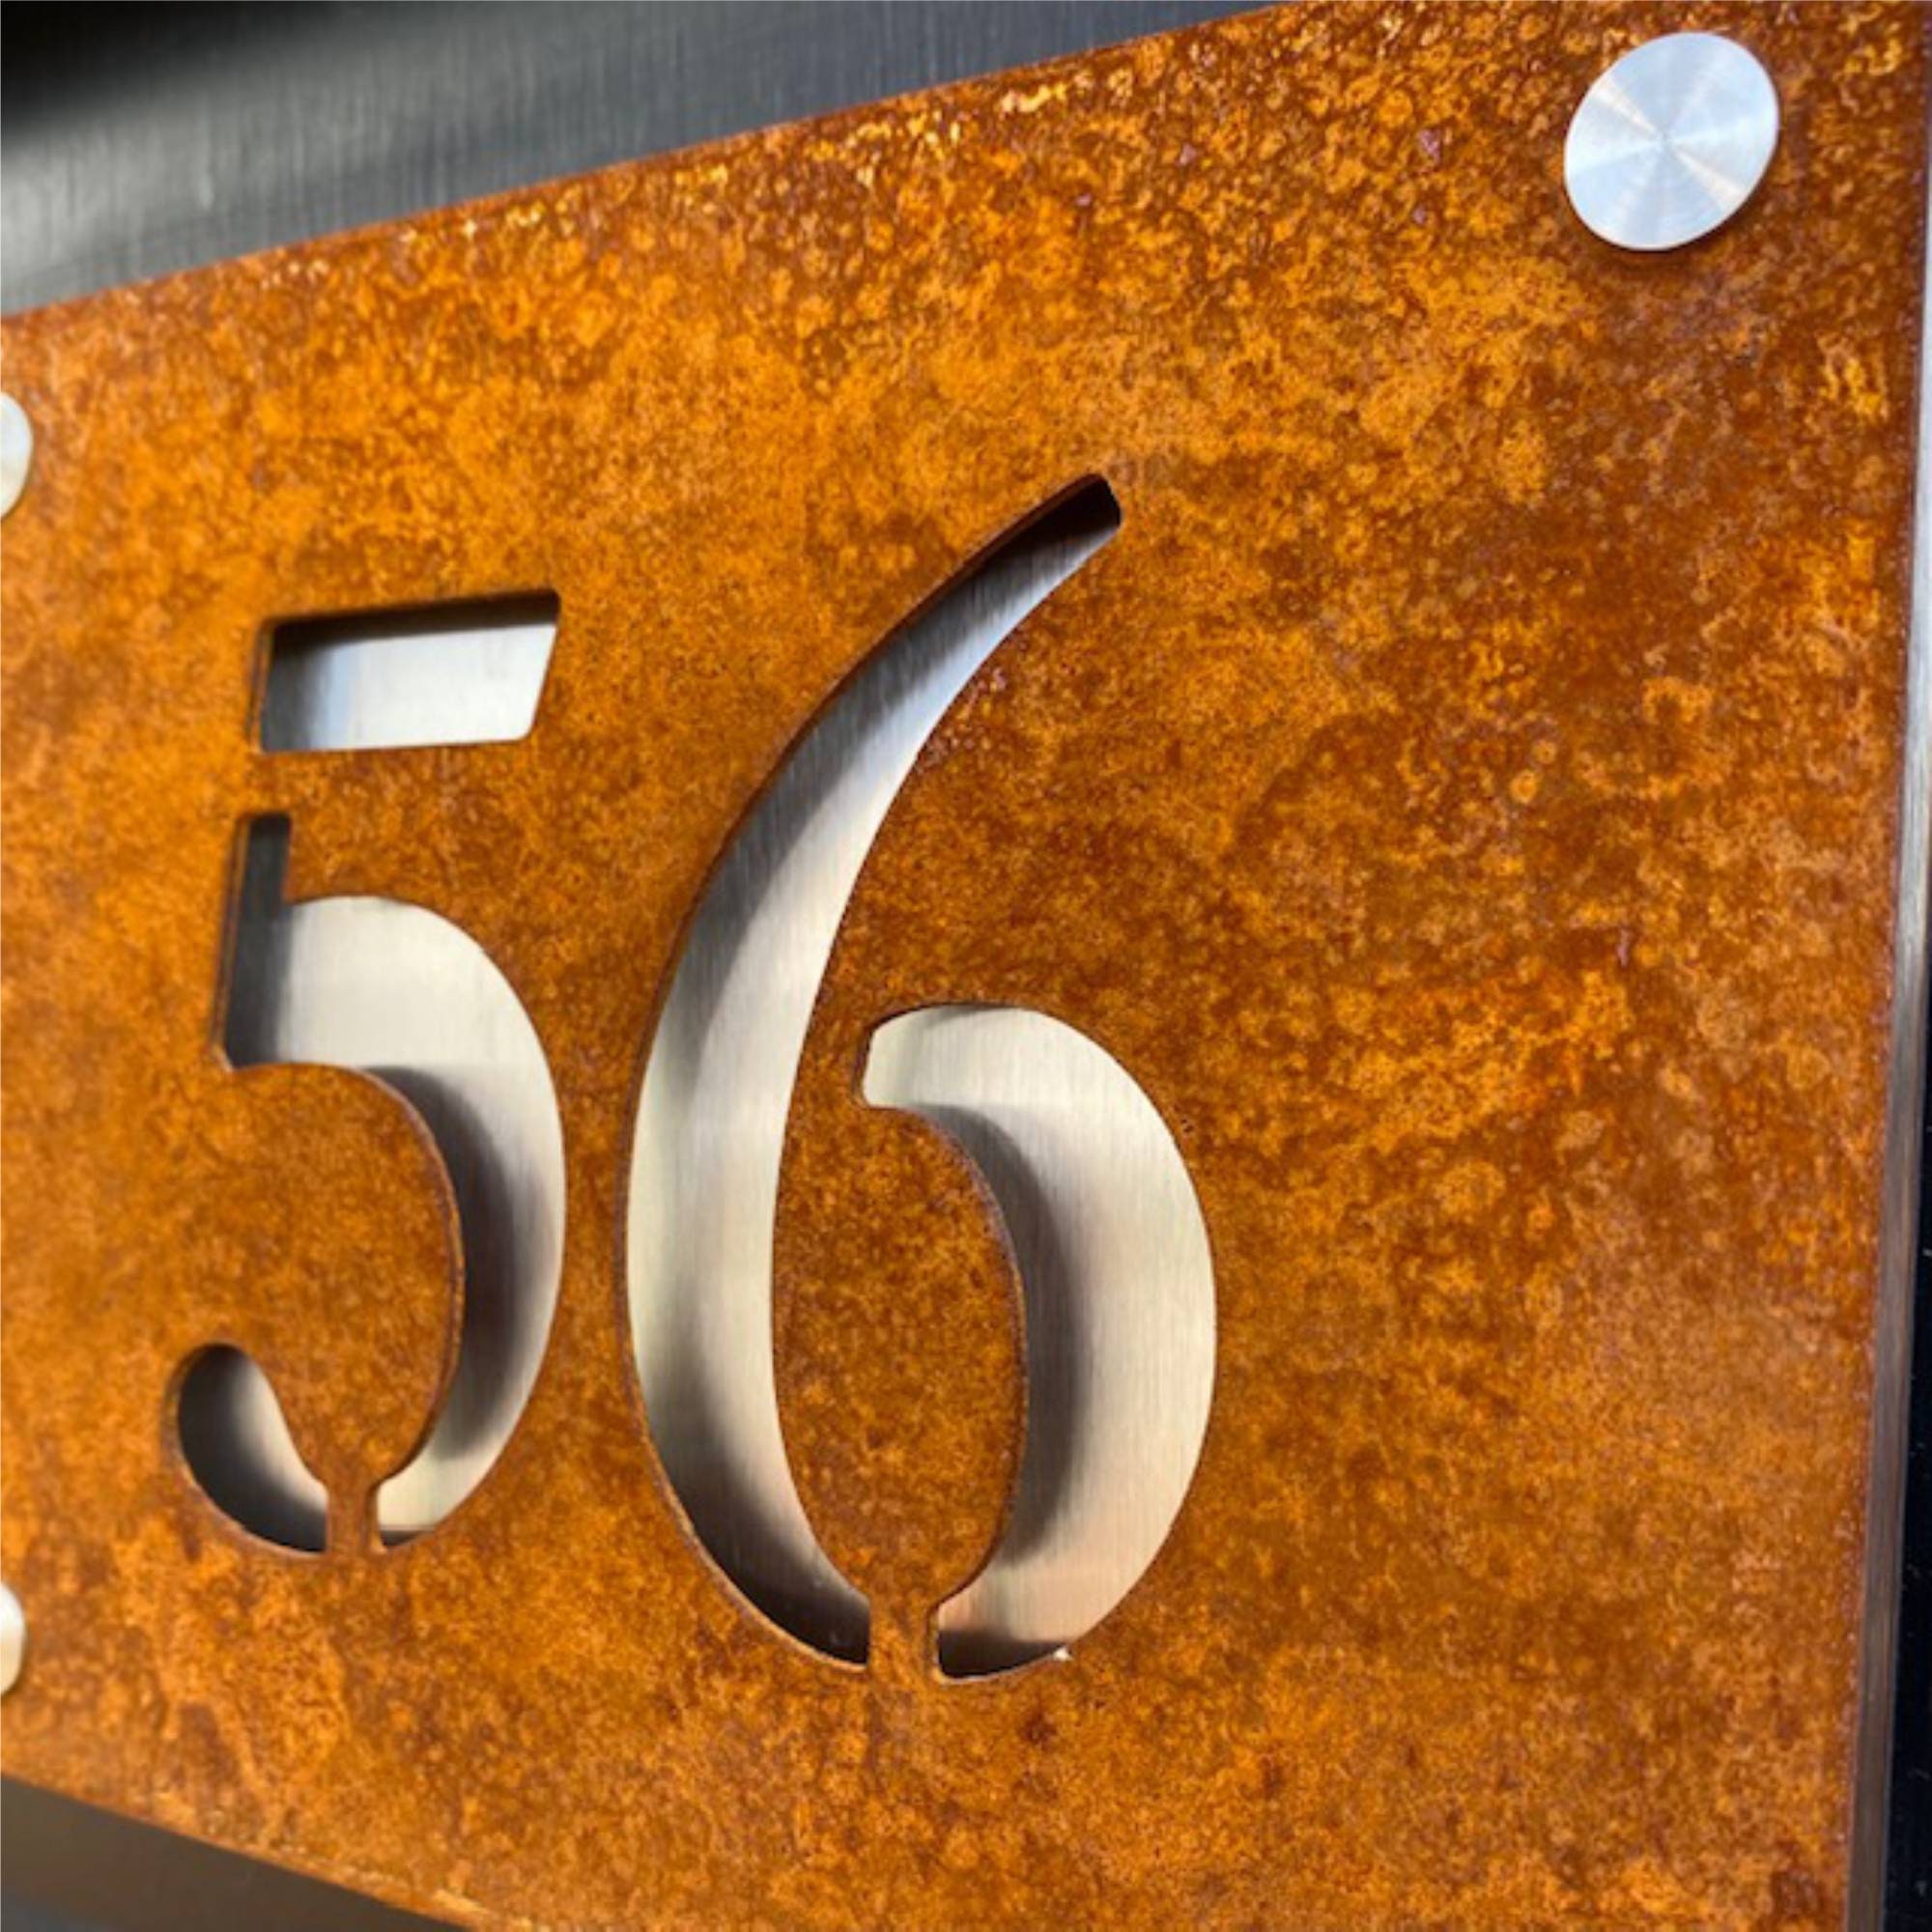 Plaque de maison numéro en métal